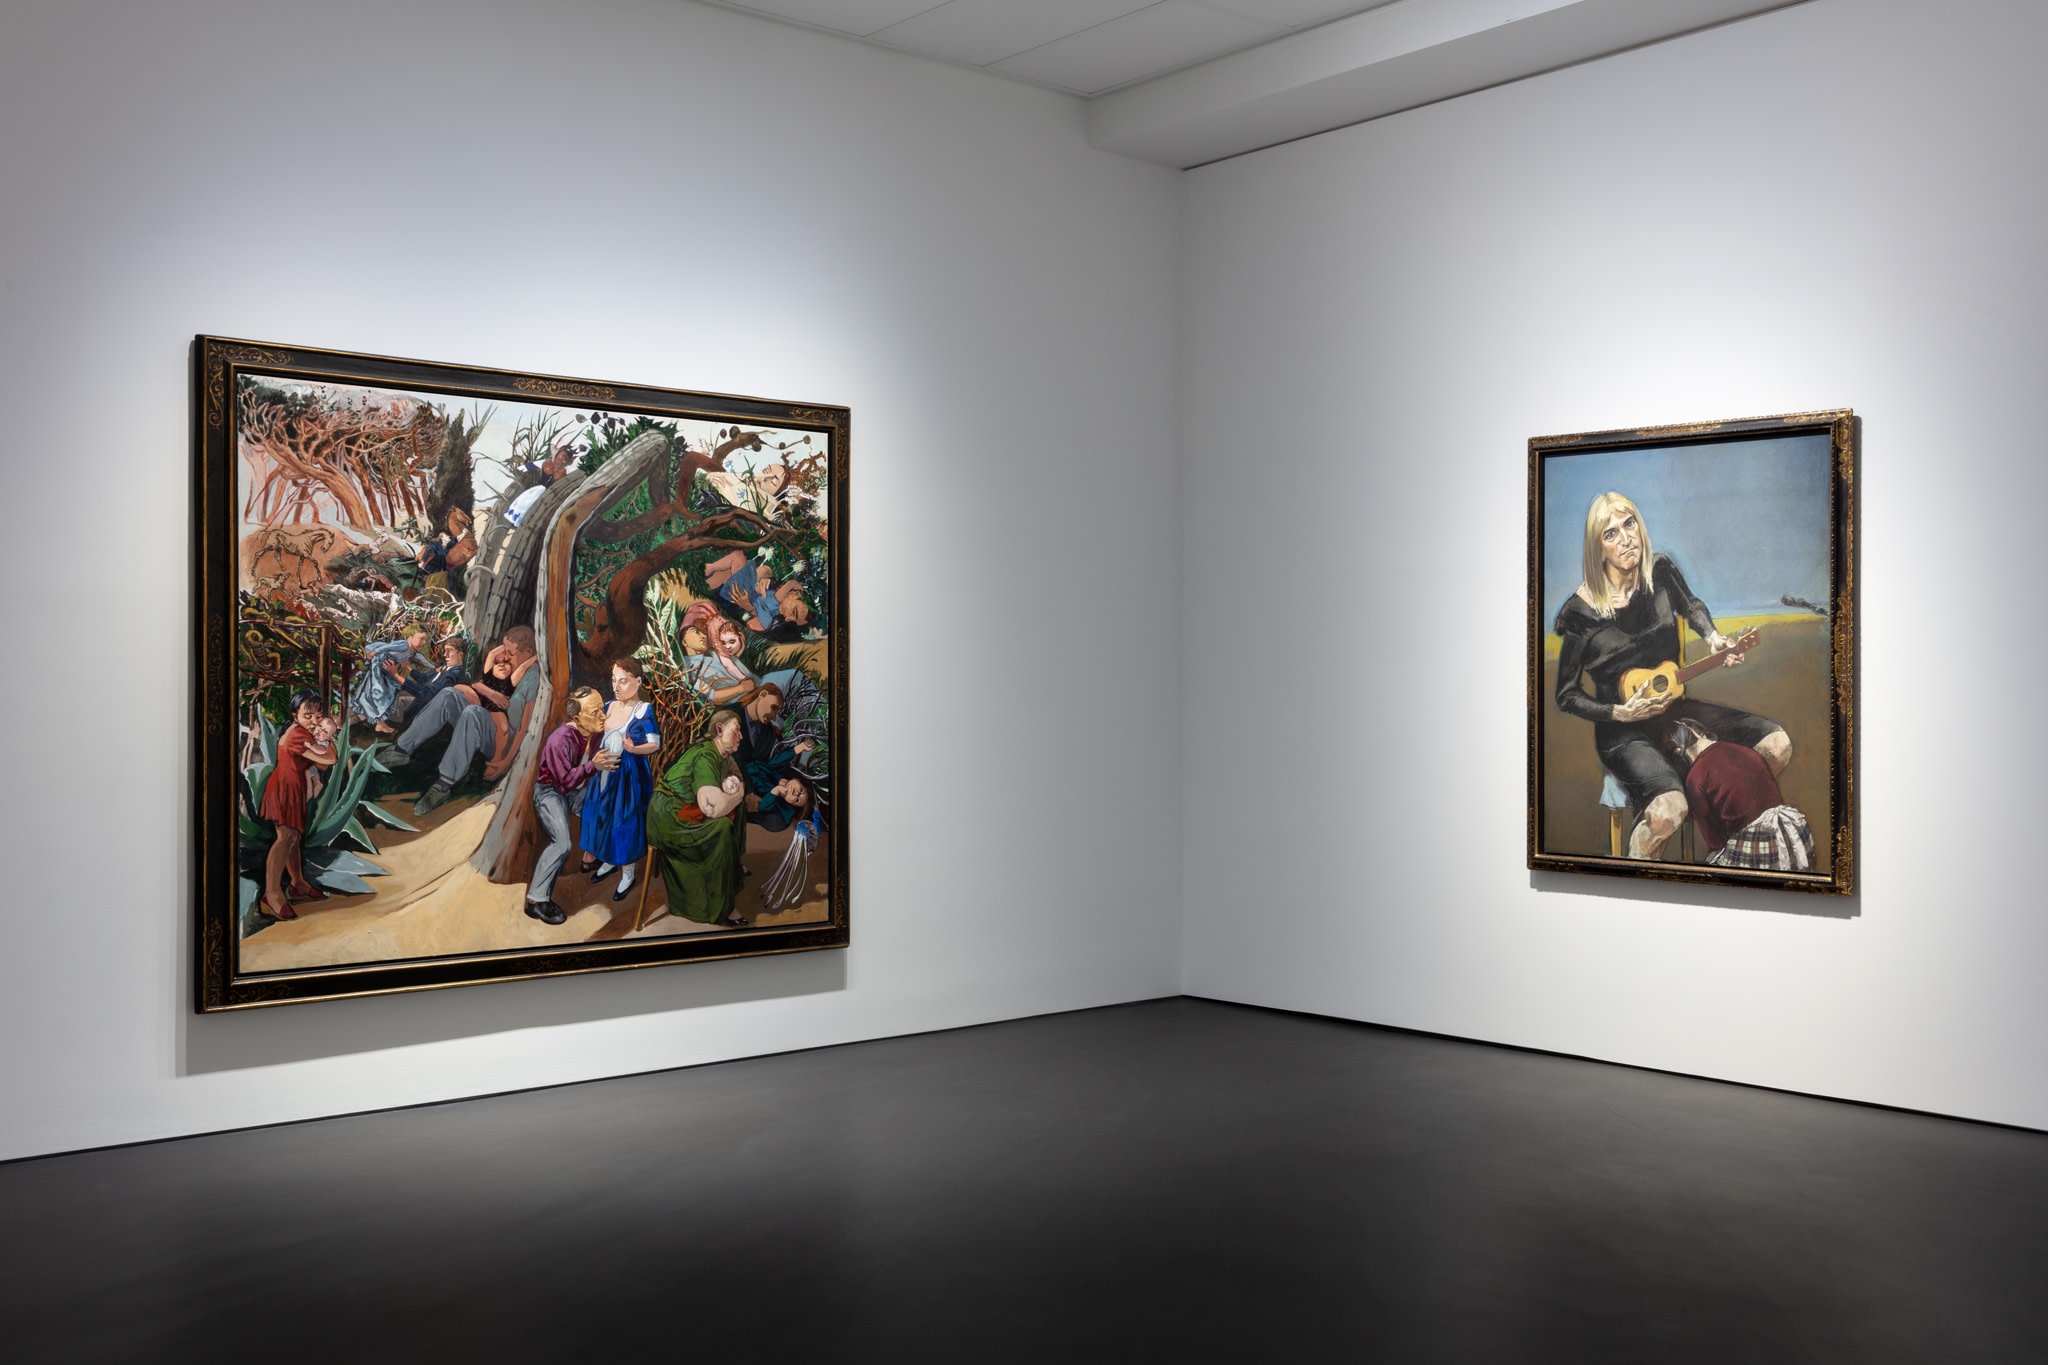 Links: Paula Rego, Caritas, 1993, Acryl auf Leinwand, 200 x 240 cm (78 3/4 x 94 1/2 in) (PR 001). Rechts: Paula Rego, Olga, 2003, Pastell auf Papier, auf Aluminium aufgezogen, 160 x 120 cm (63 x 47 1/4 in). Foto © Andrea Rossetti